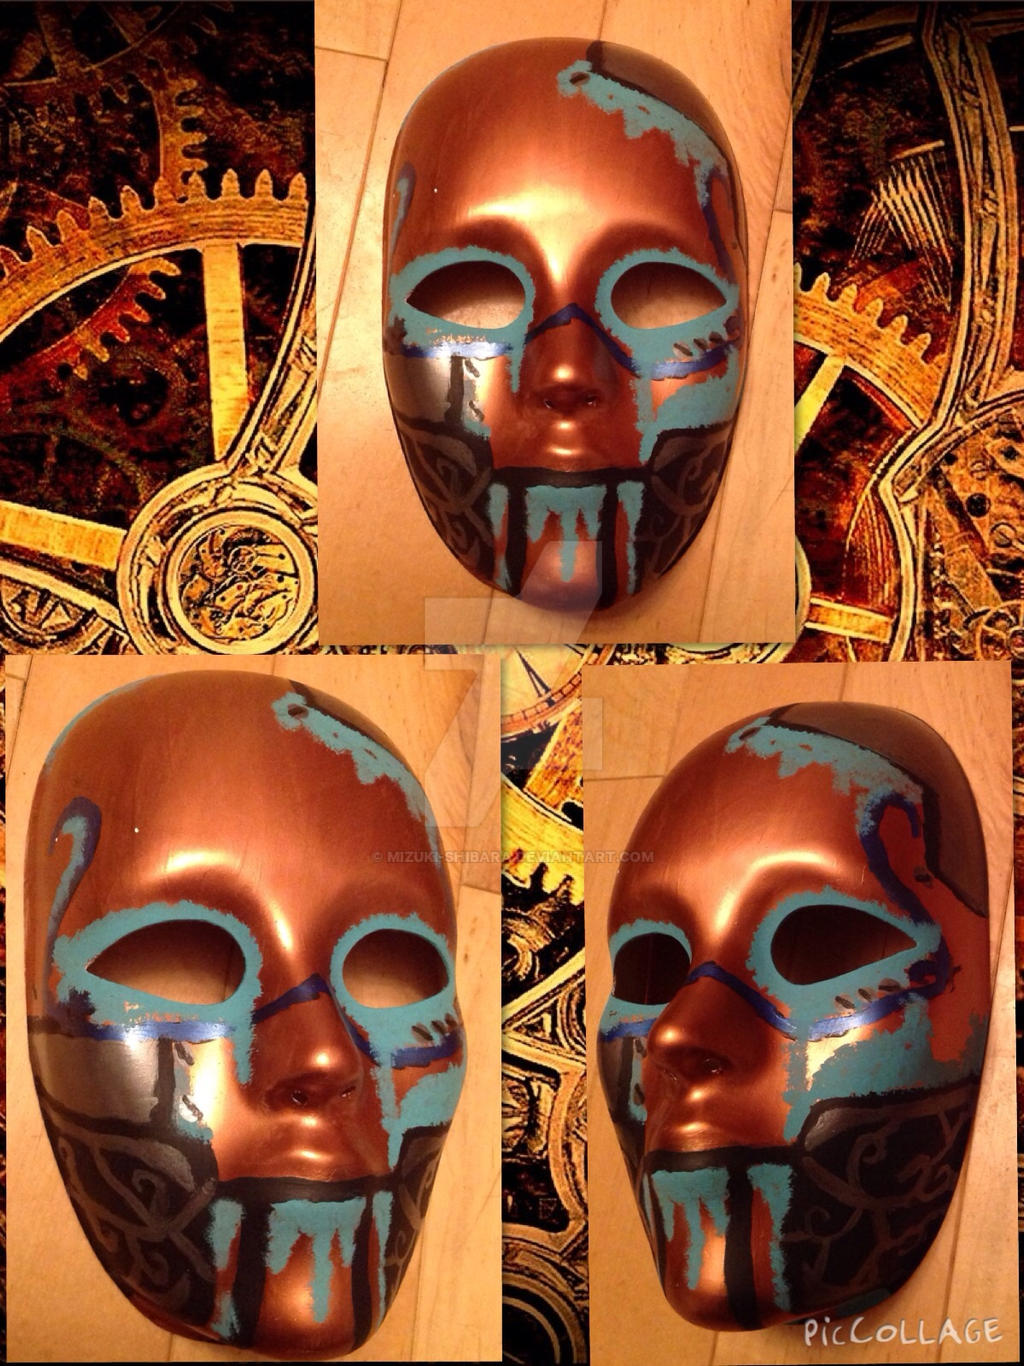 Automaton mask